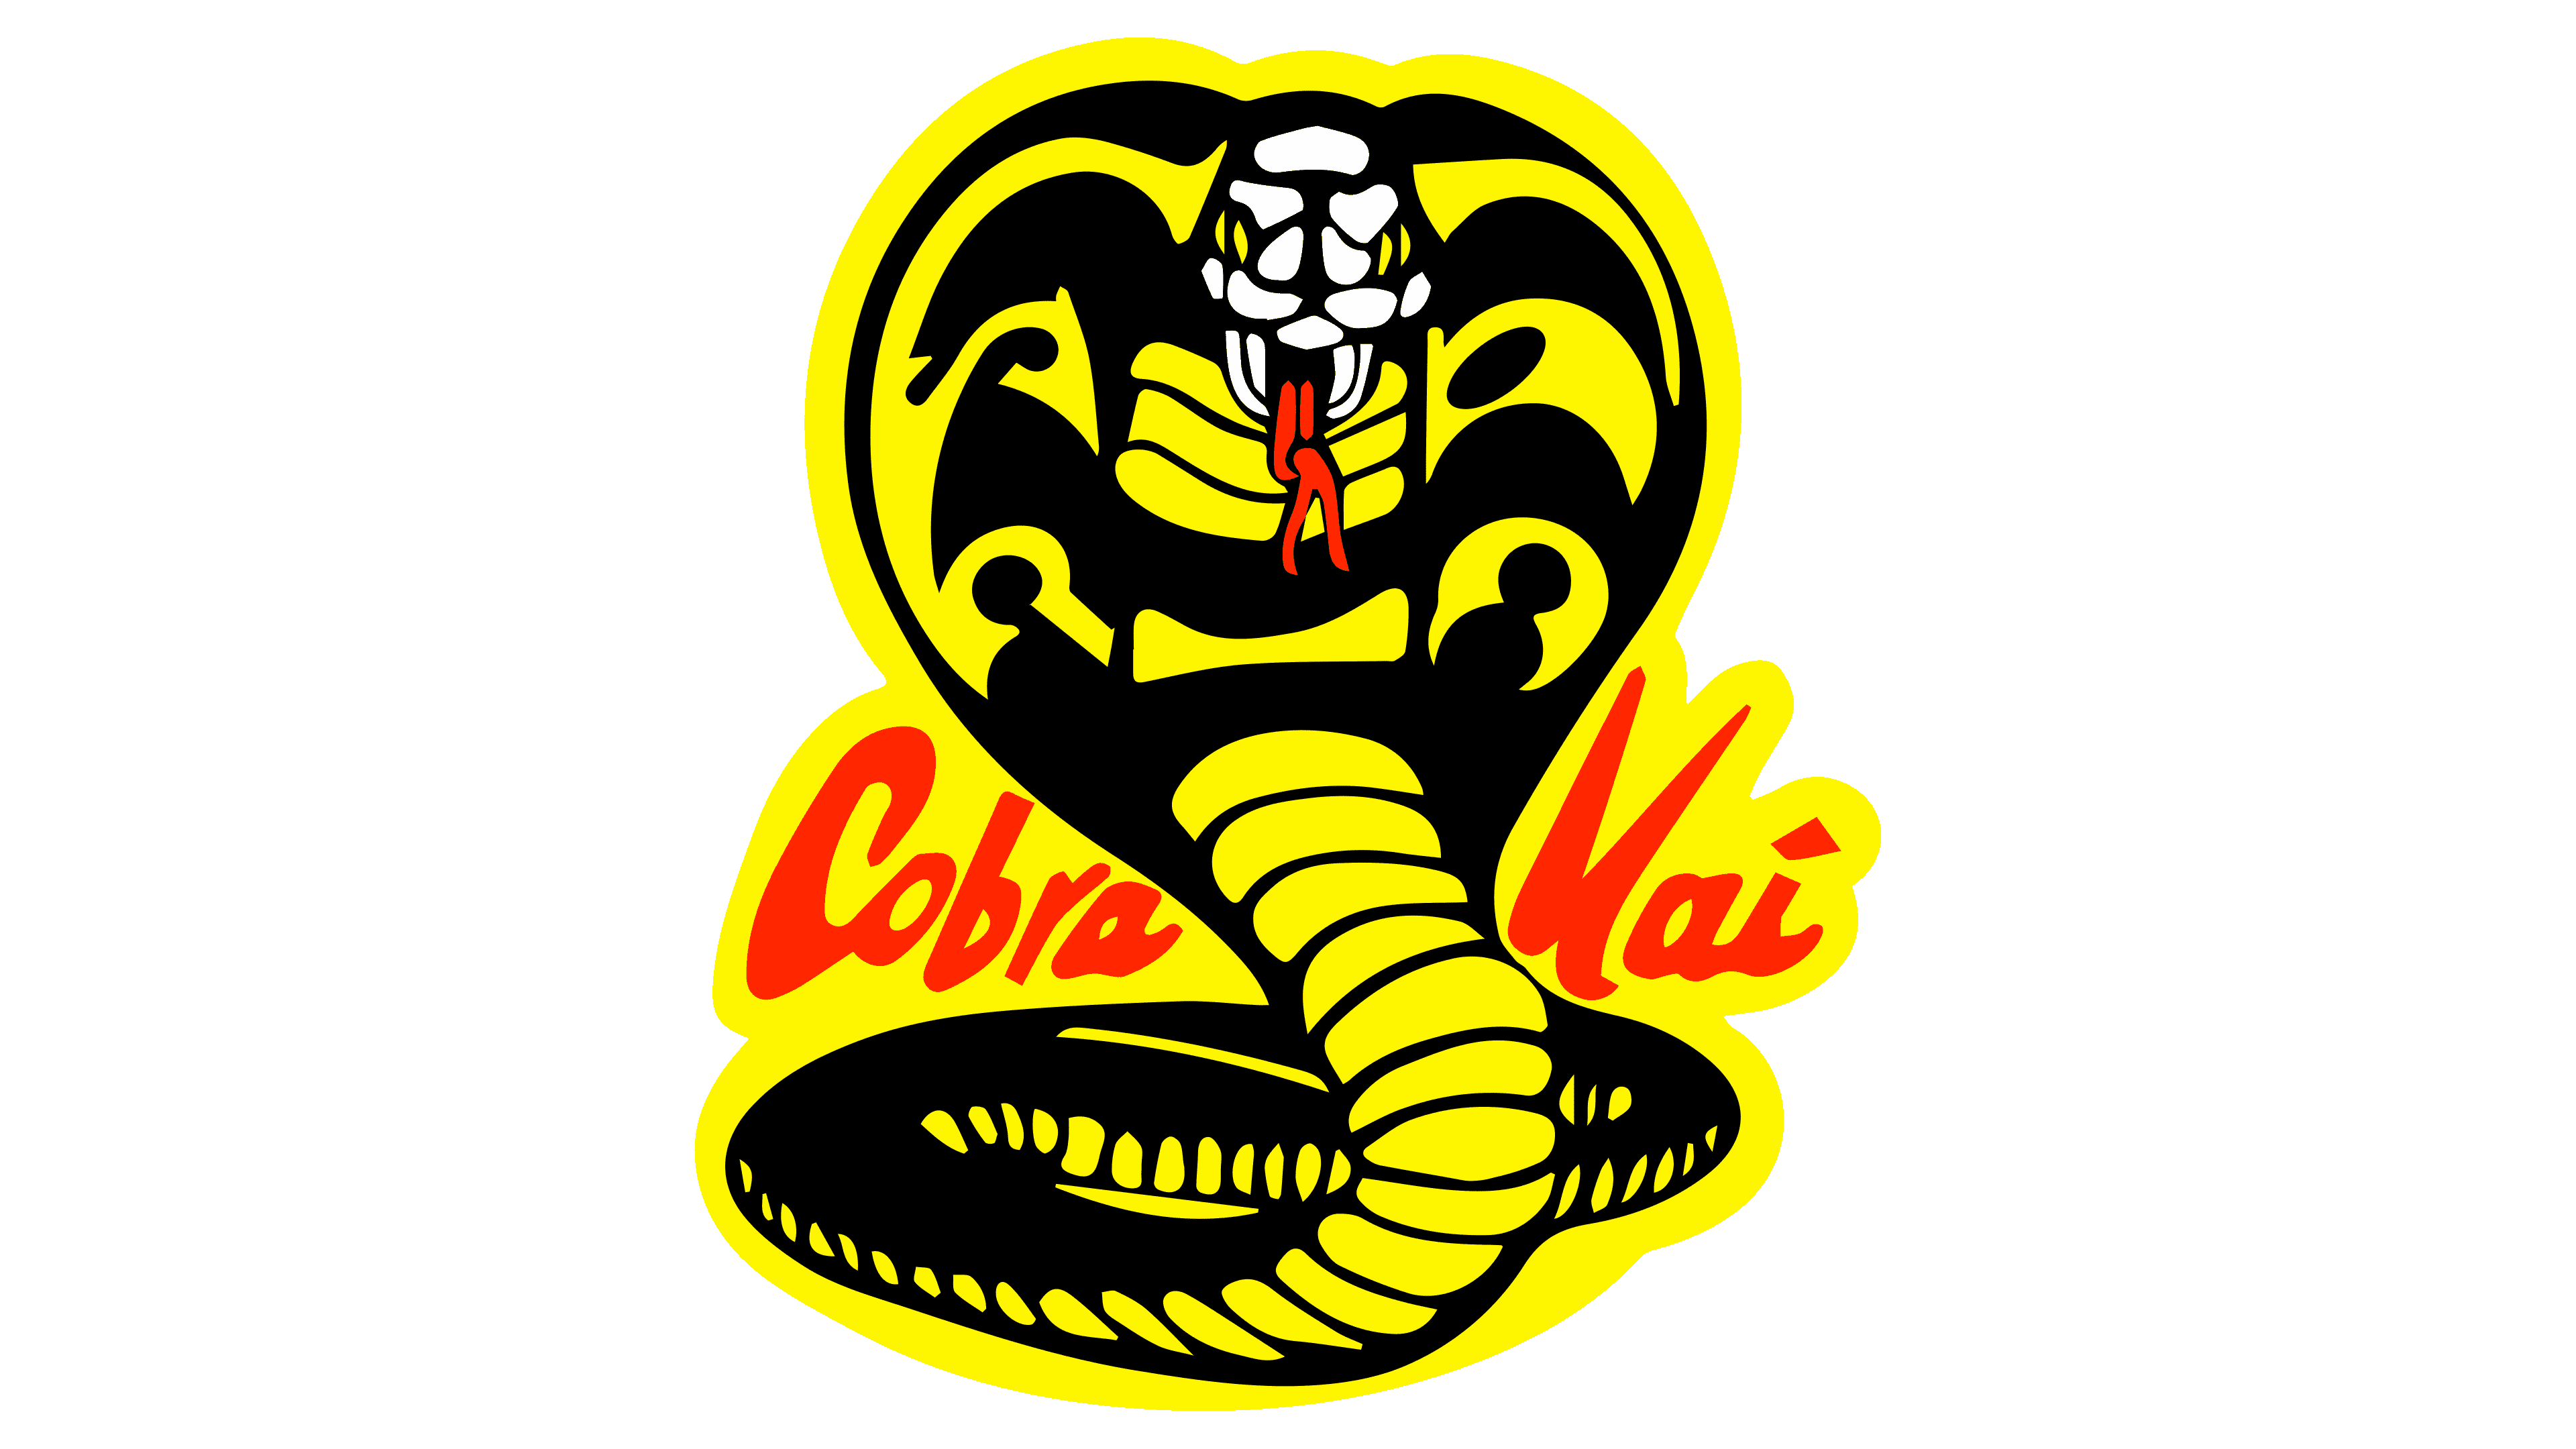 Details 48 el logo de cobra kai